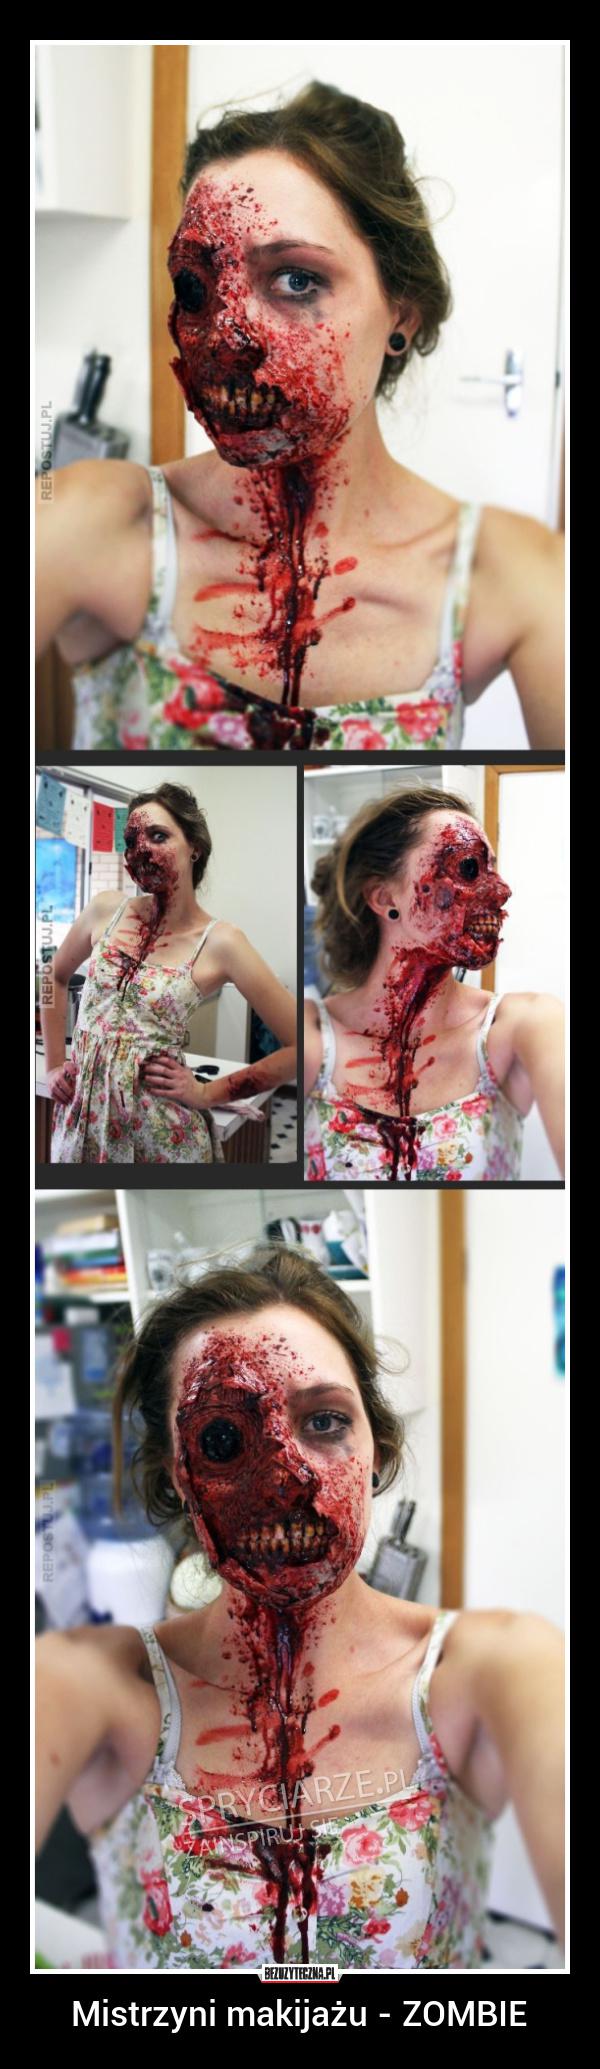 Mistrzyni makijażu Zombie